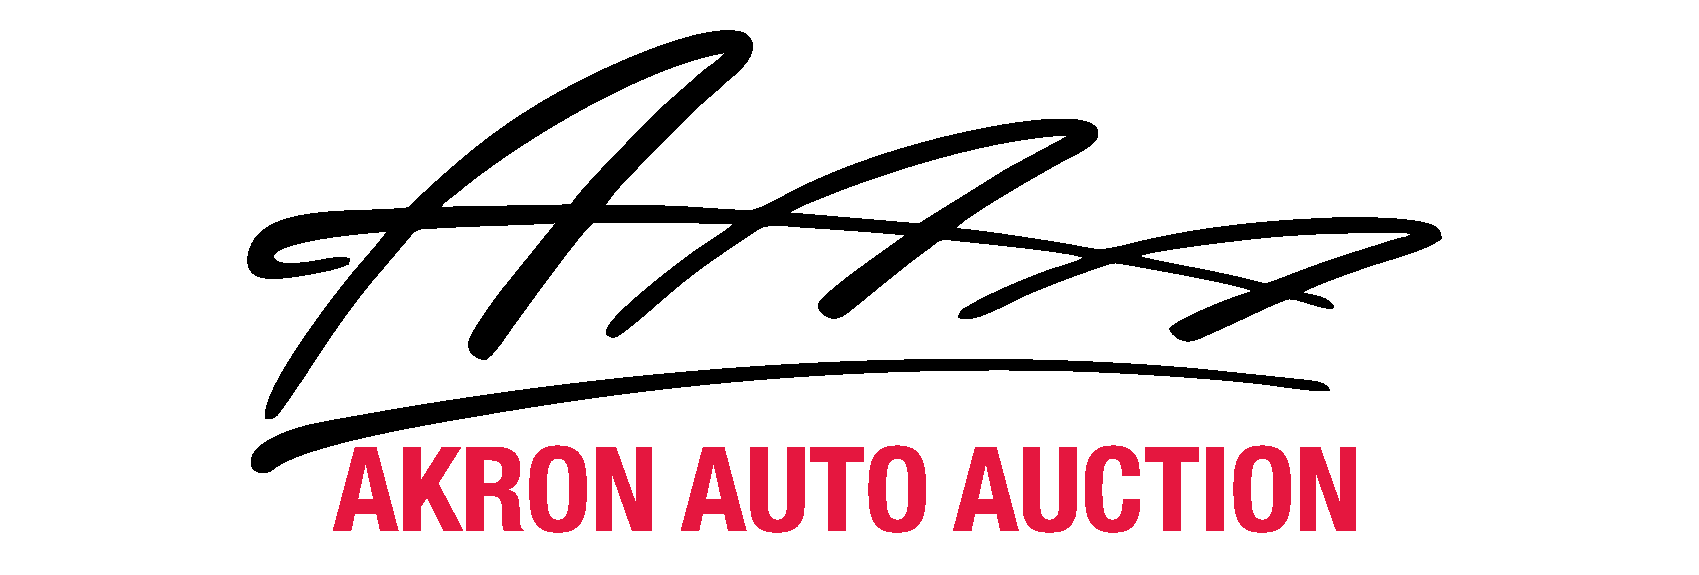 Akron Auto Auction - Community Partner Gold Sponsor